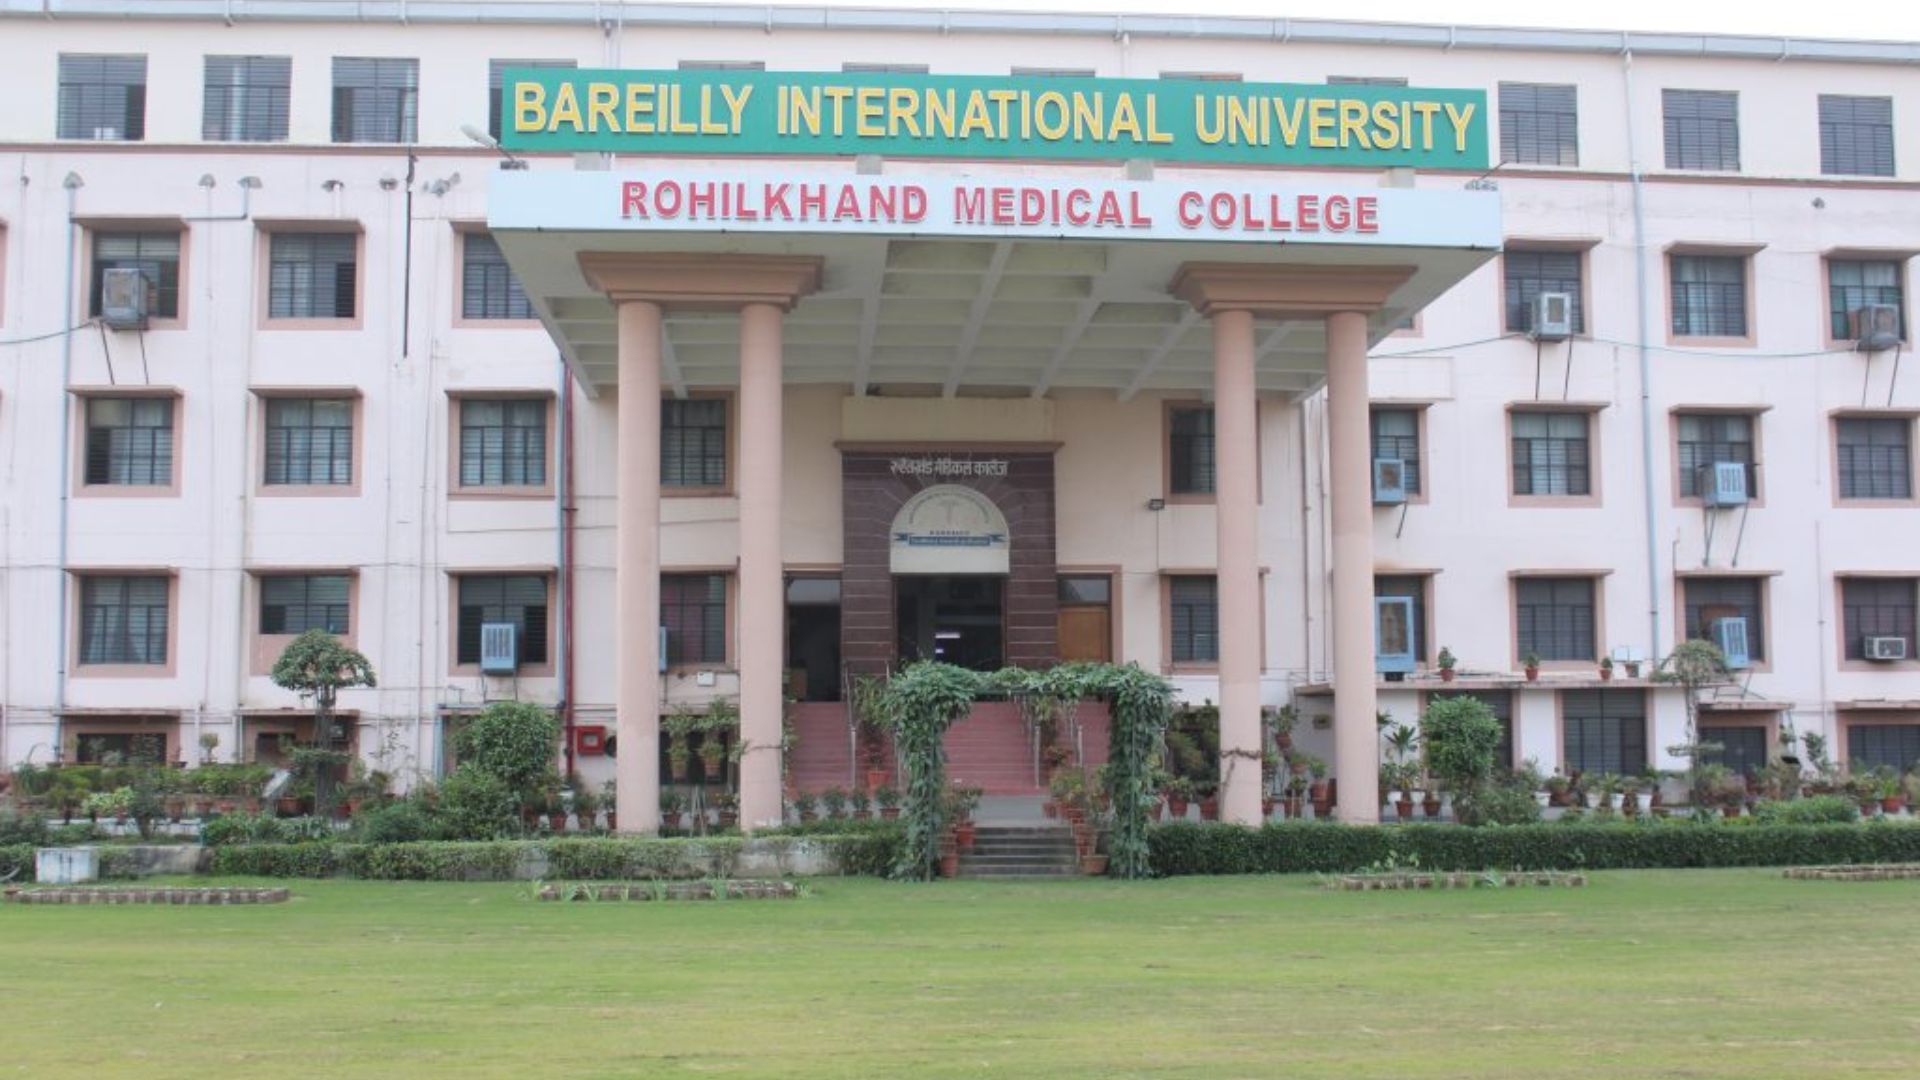 बरेली: रोहिलखंड मेडिकल कॉलेज में विद्यार्थियों को बताए गए साइबर क्राइम से बचाव के तरीके 